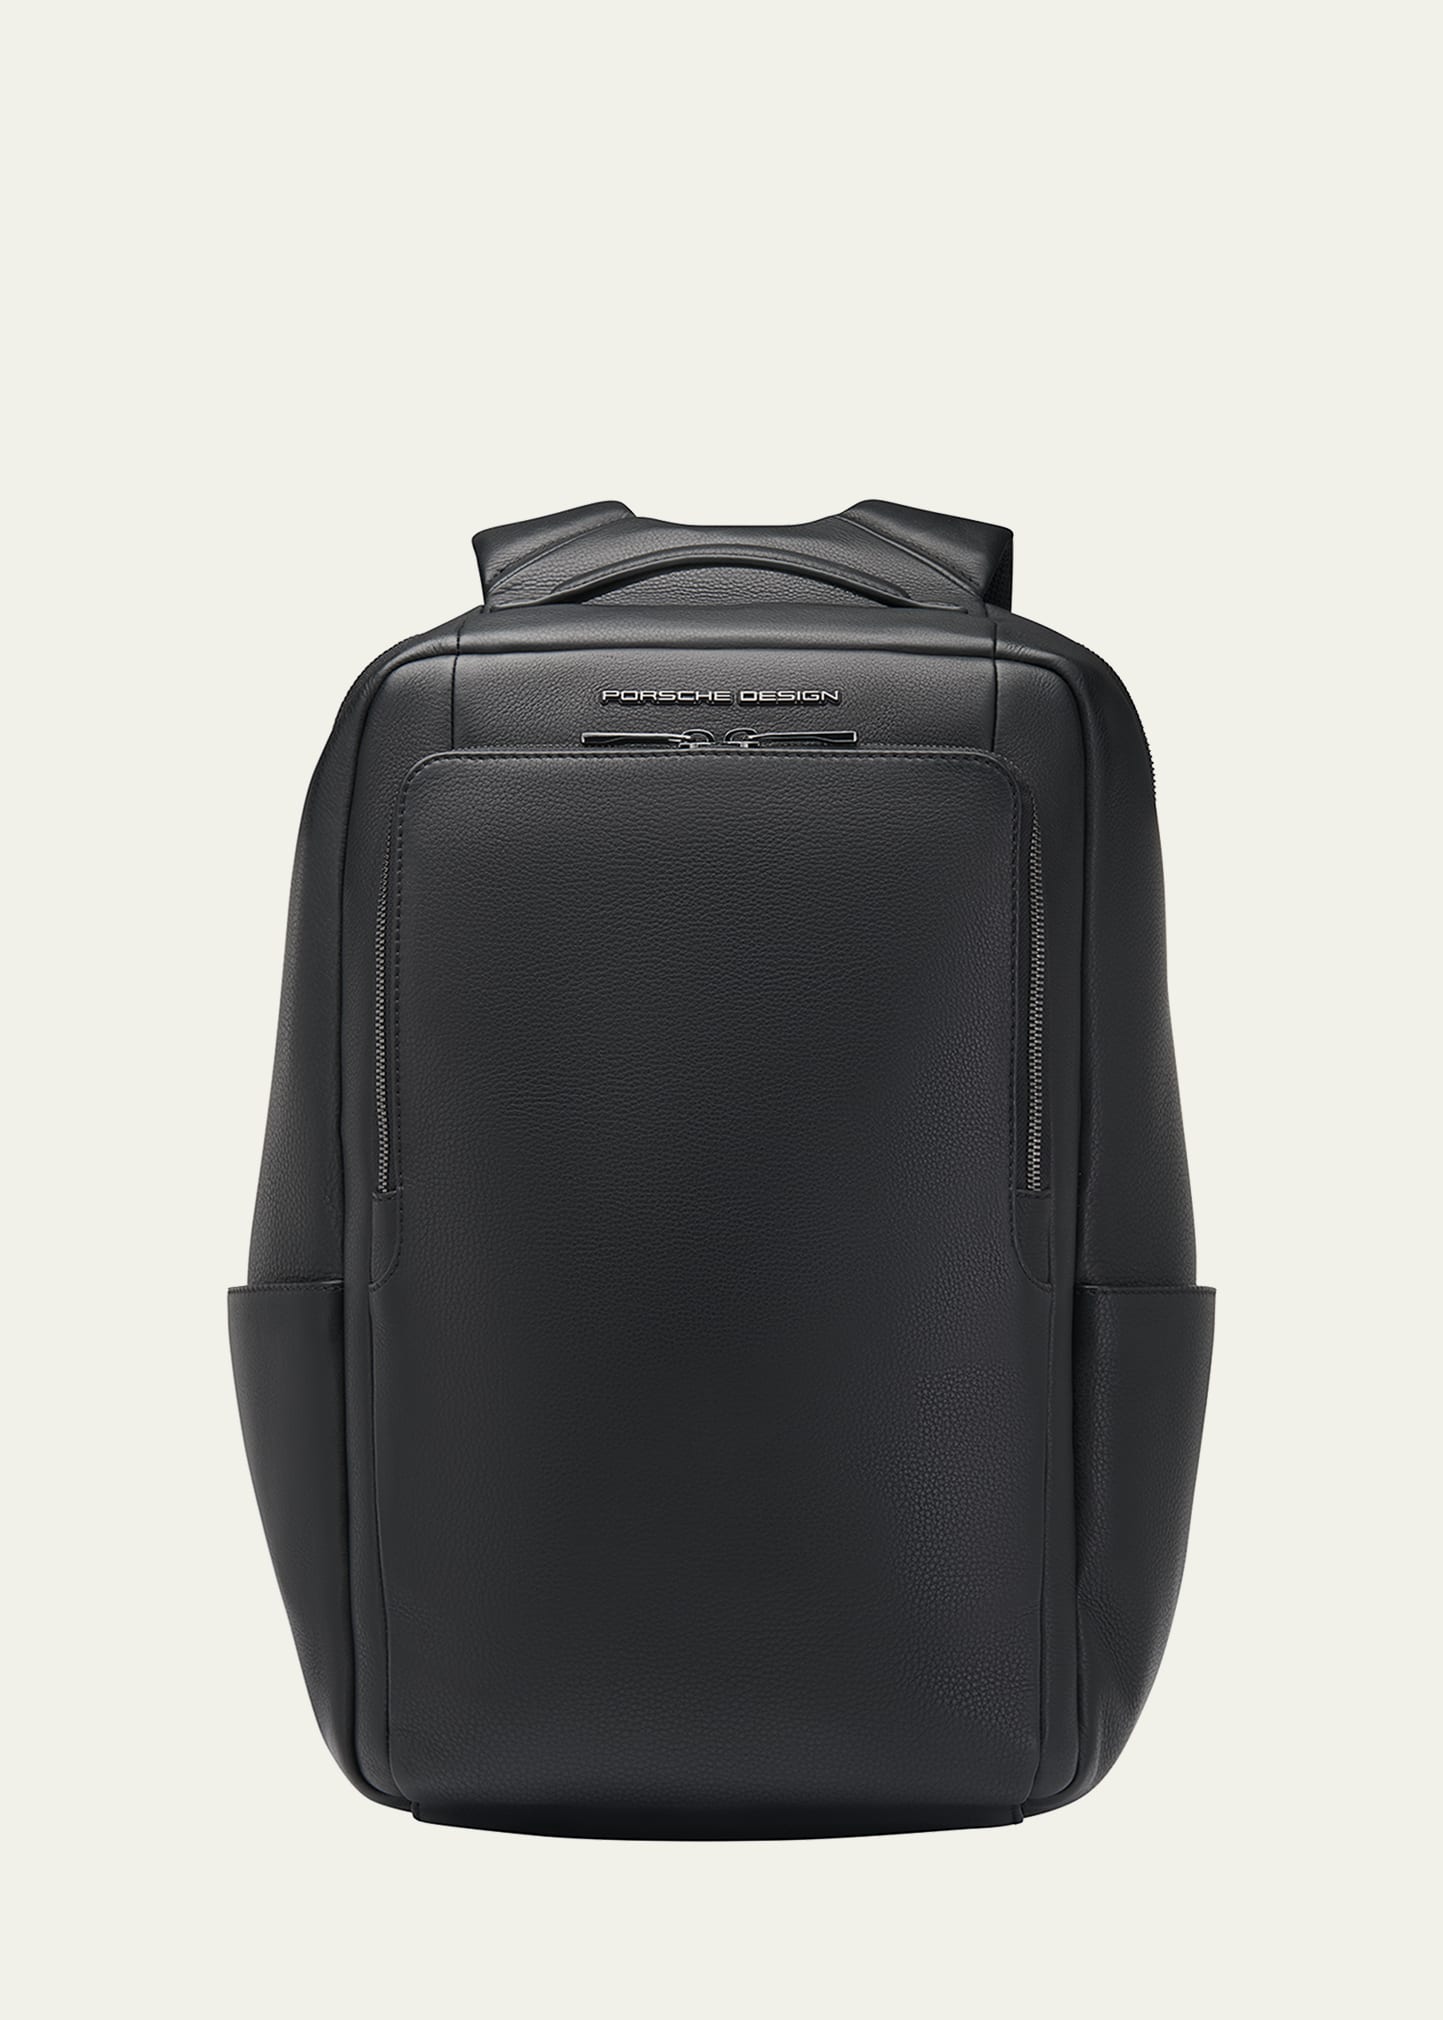 Porsche Design Roadster Leather Medium Backpack In Black